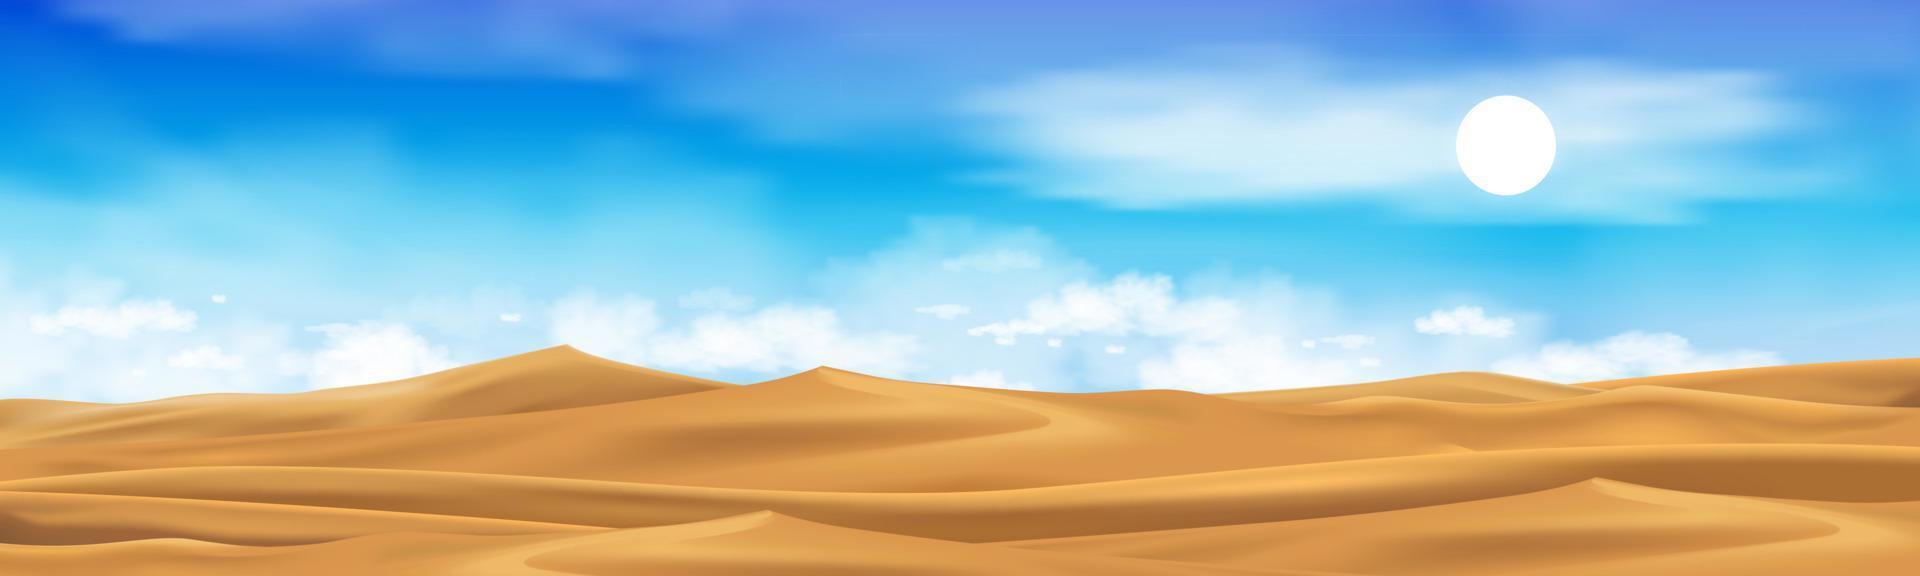 Wüstenlandschaft mit goldenen Sanddünen mit flauschigen Wolken blauer Himmel. vektorkarikatur heiß trocken menschenleer. Horizont schöner Naturhintergrund mit gelben Sandhügeln Parallaxenszene im heißen sonnigen Sommertag vektor